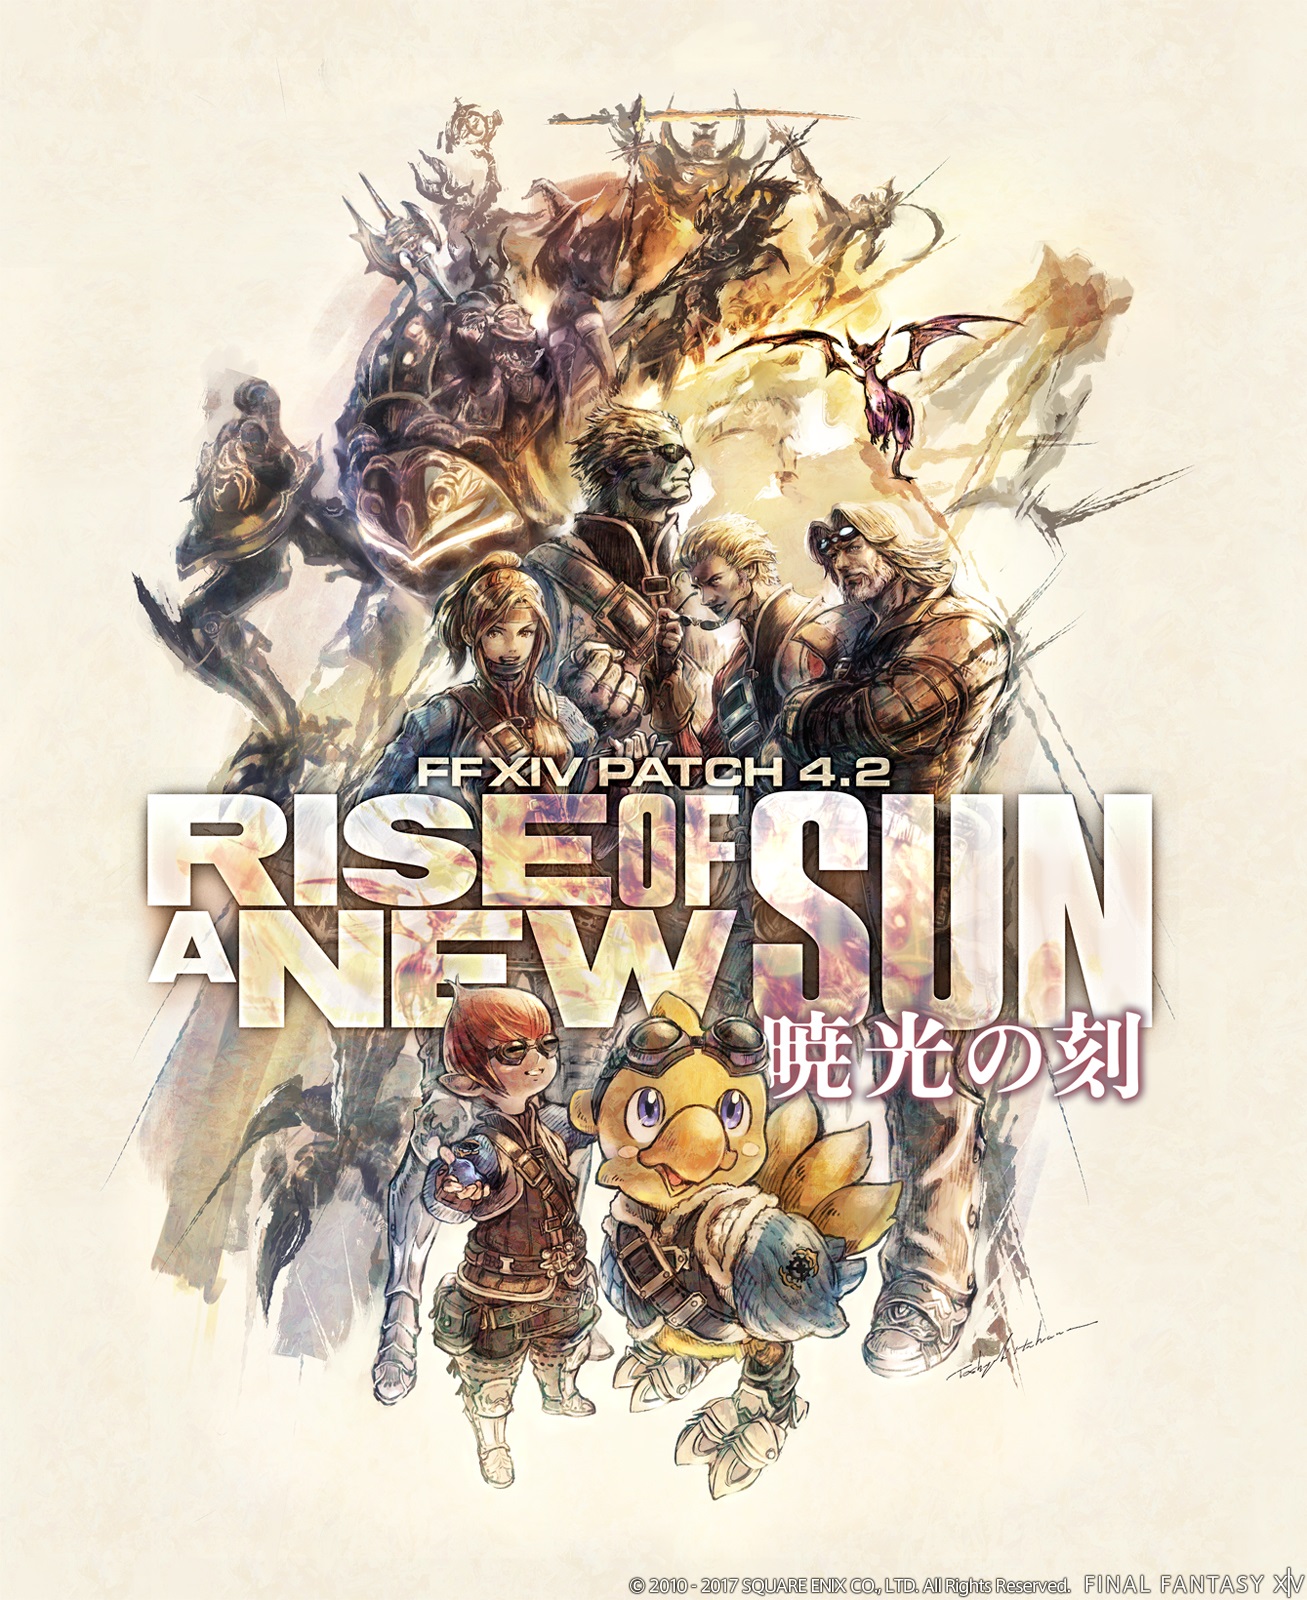 ‘Rise of a New Sun’, parche 4.2 de Final Fantasy XIV, estrena nuevo tráiler y fecha de lanzamiento